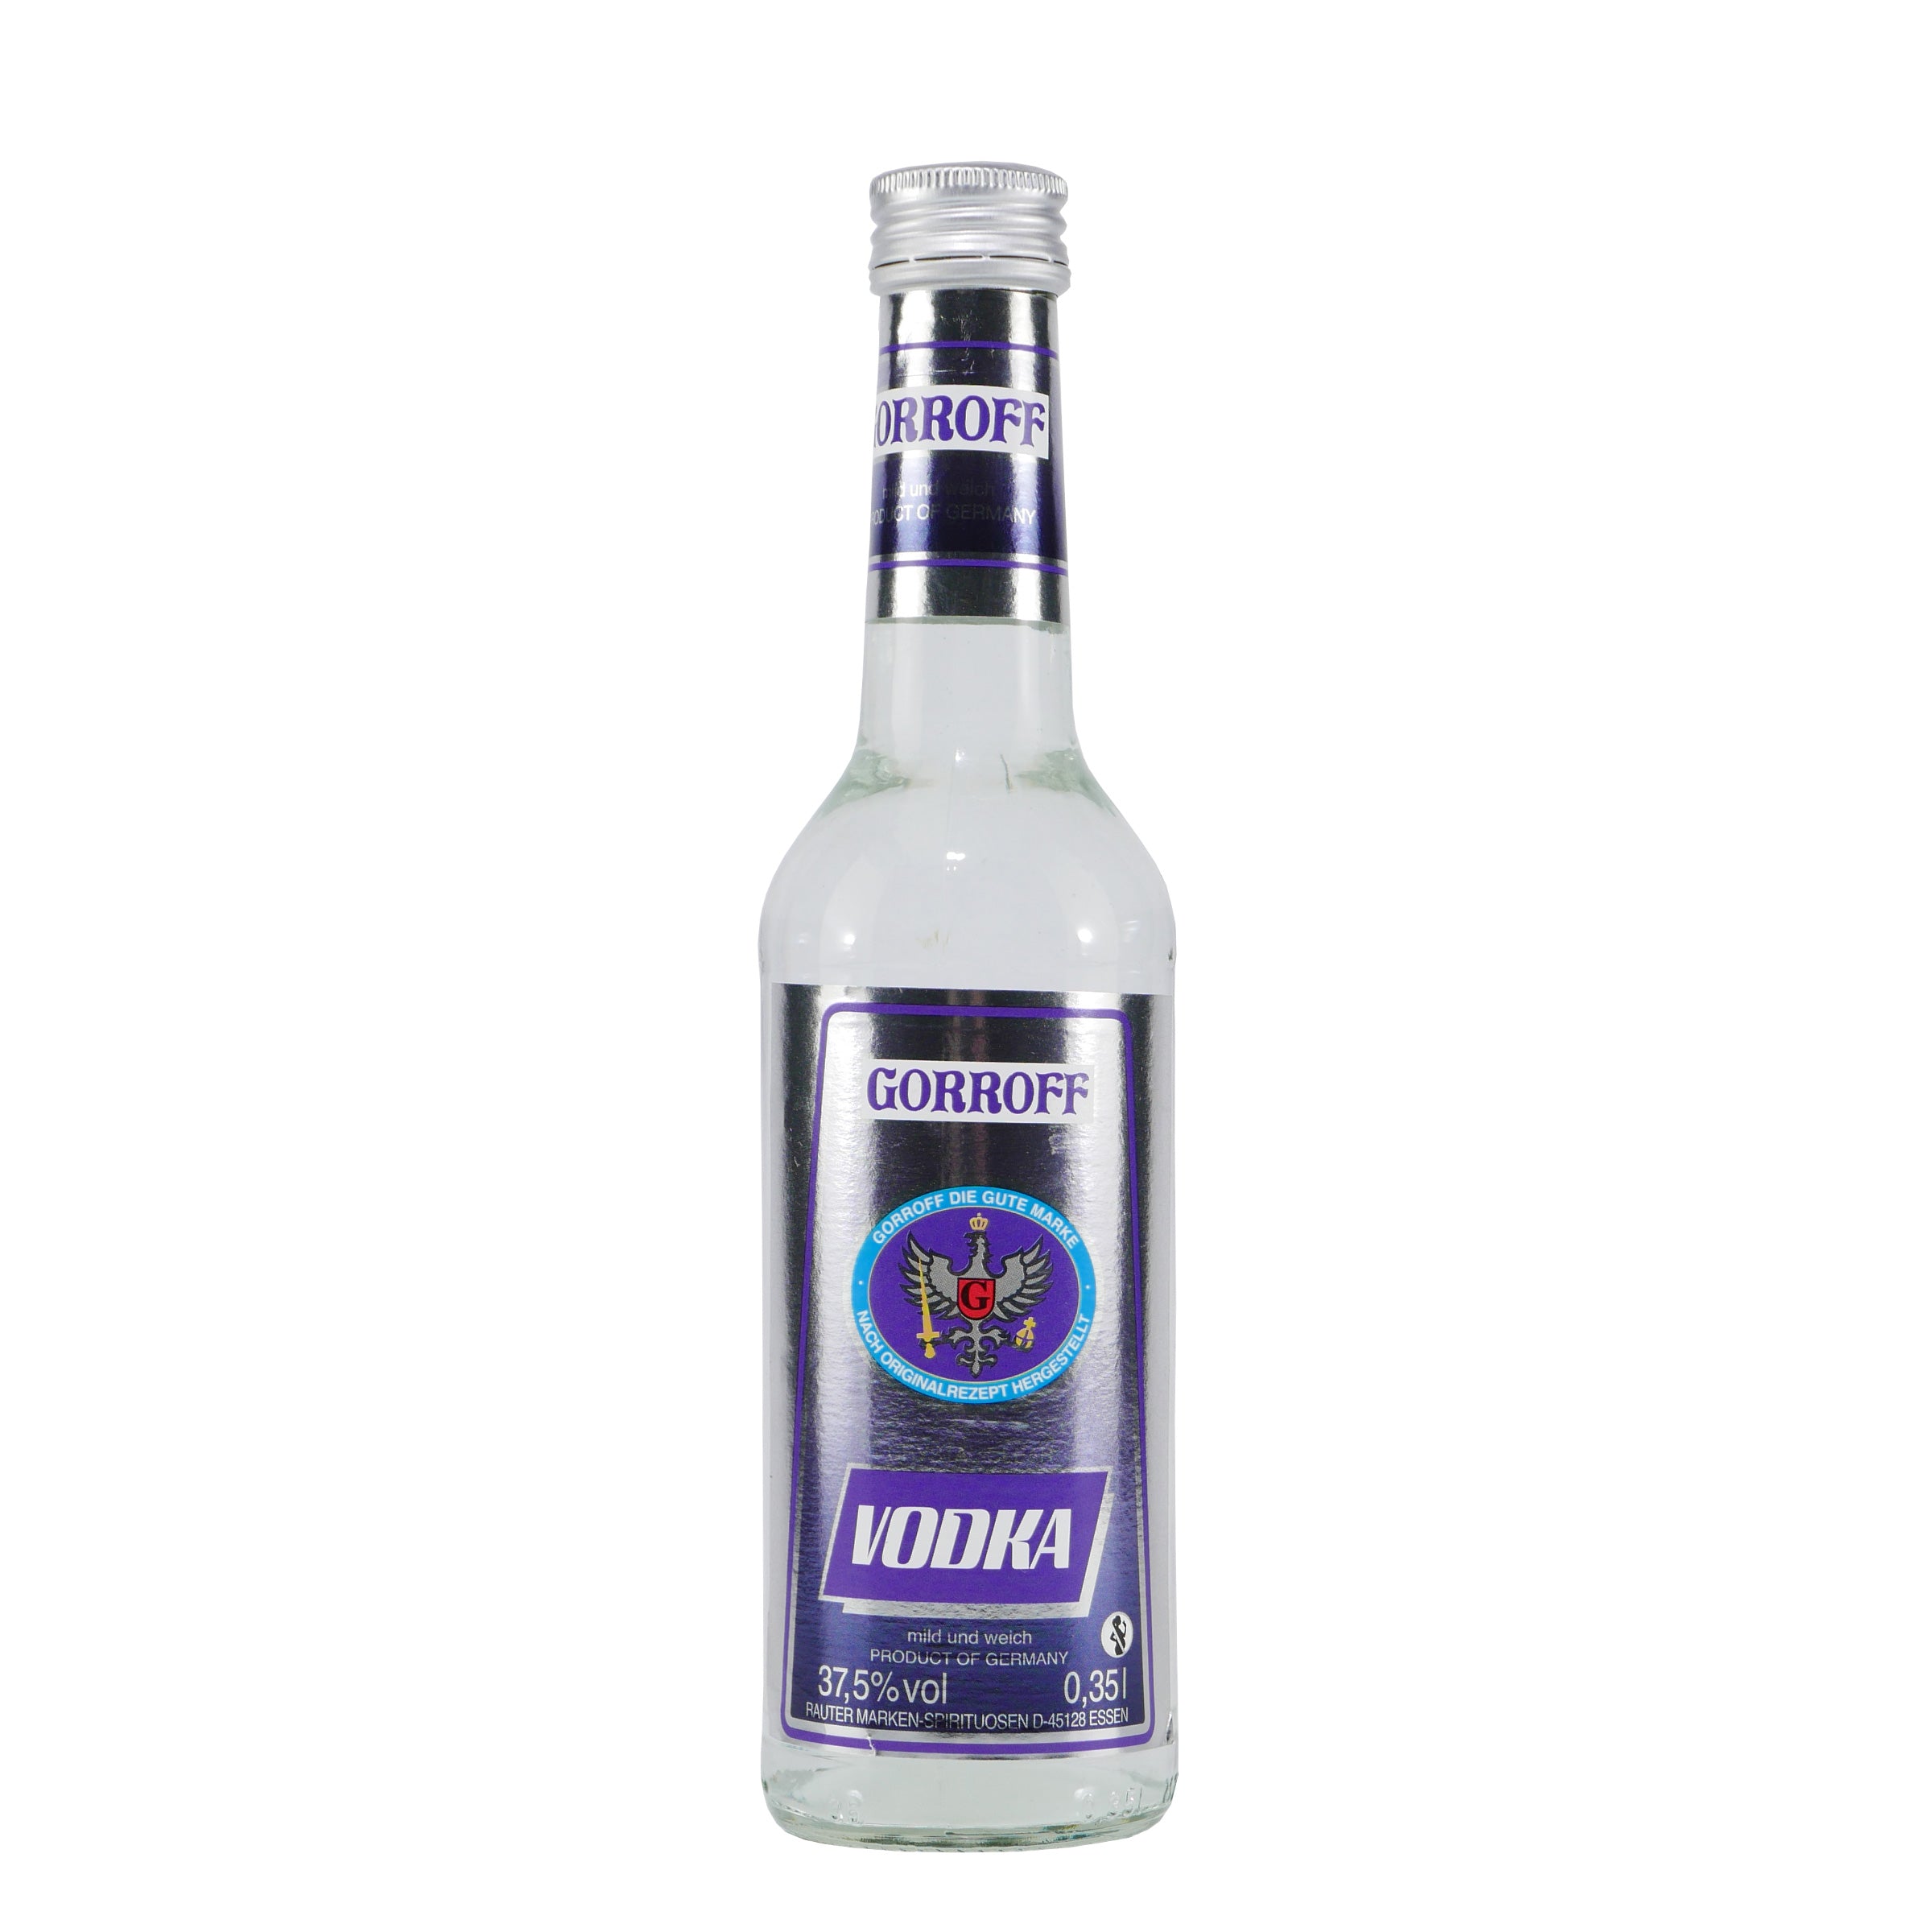 Gorroff Vodka (6 x 0,35L)